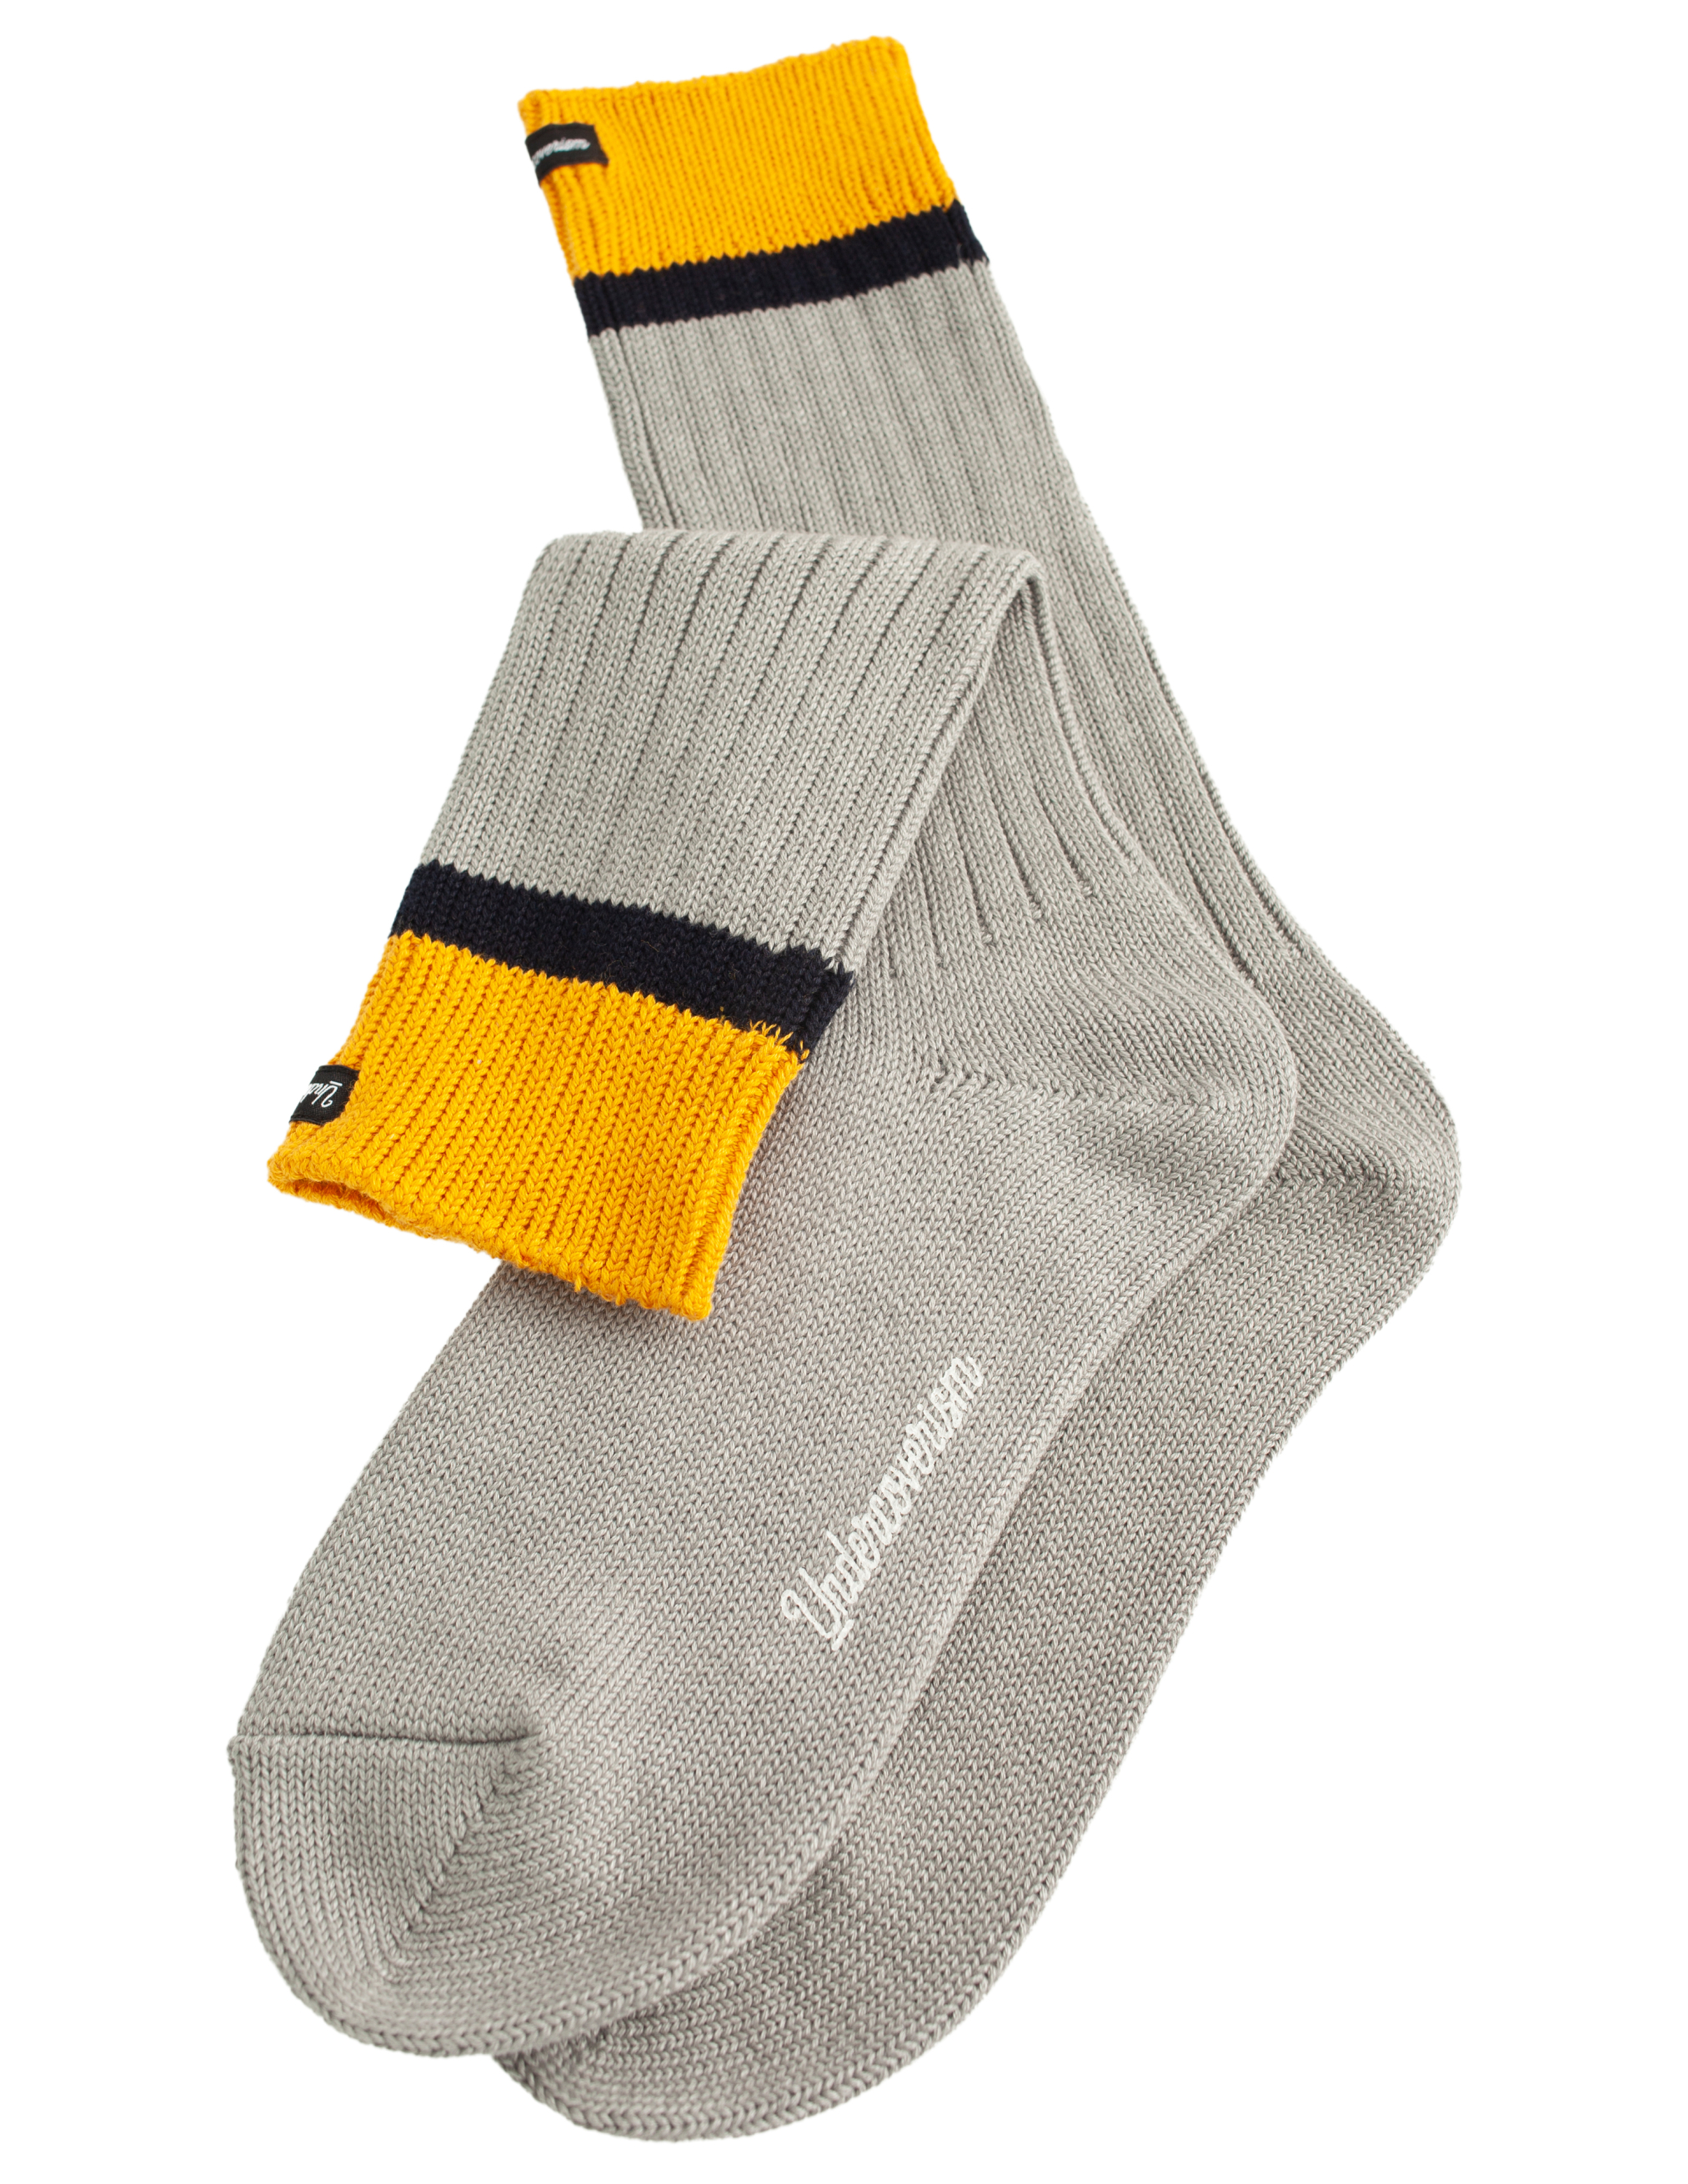 Серые носки с нашивкой Undercover UI1B4L01/gray, размер One Size UI1B4L01/gray - фото 1